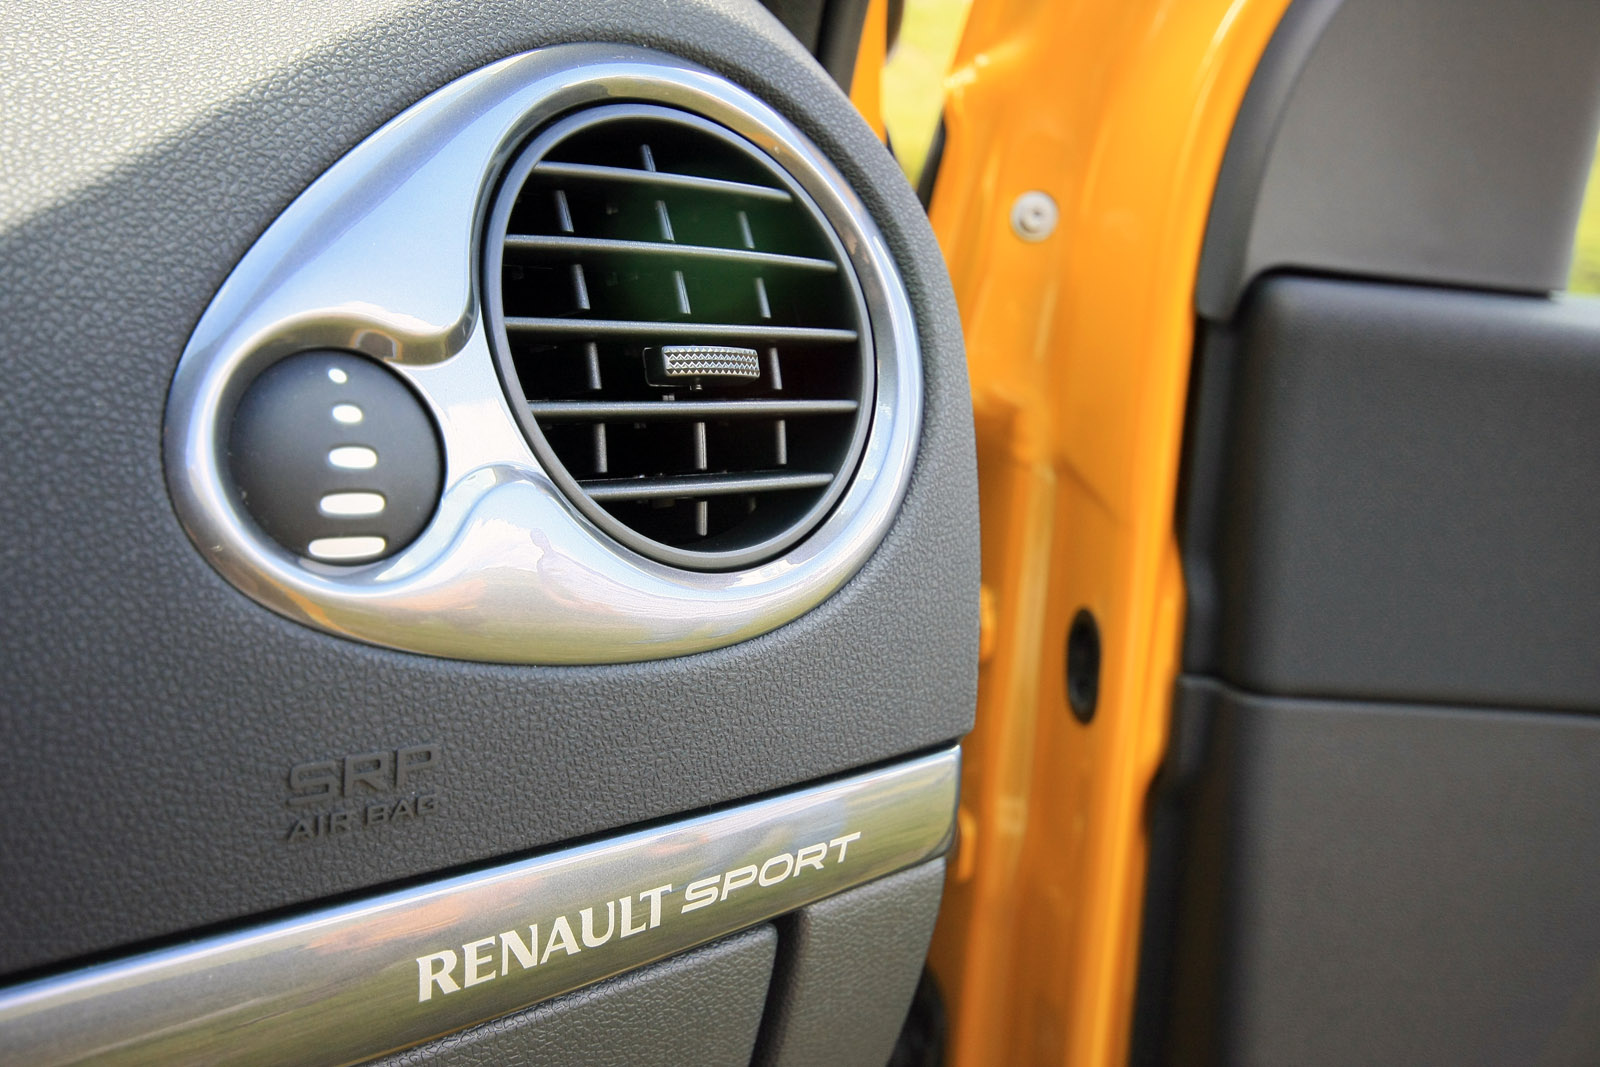 Atentie! Renault Sport!